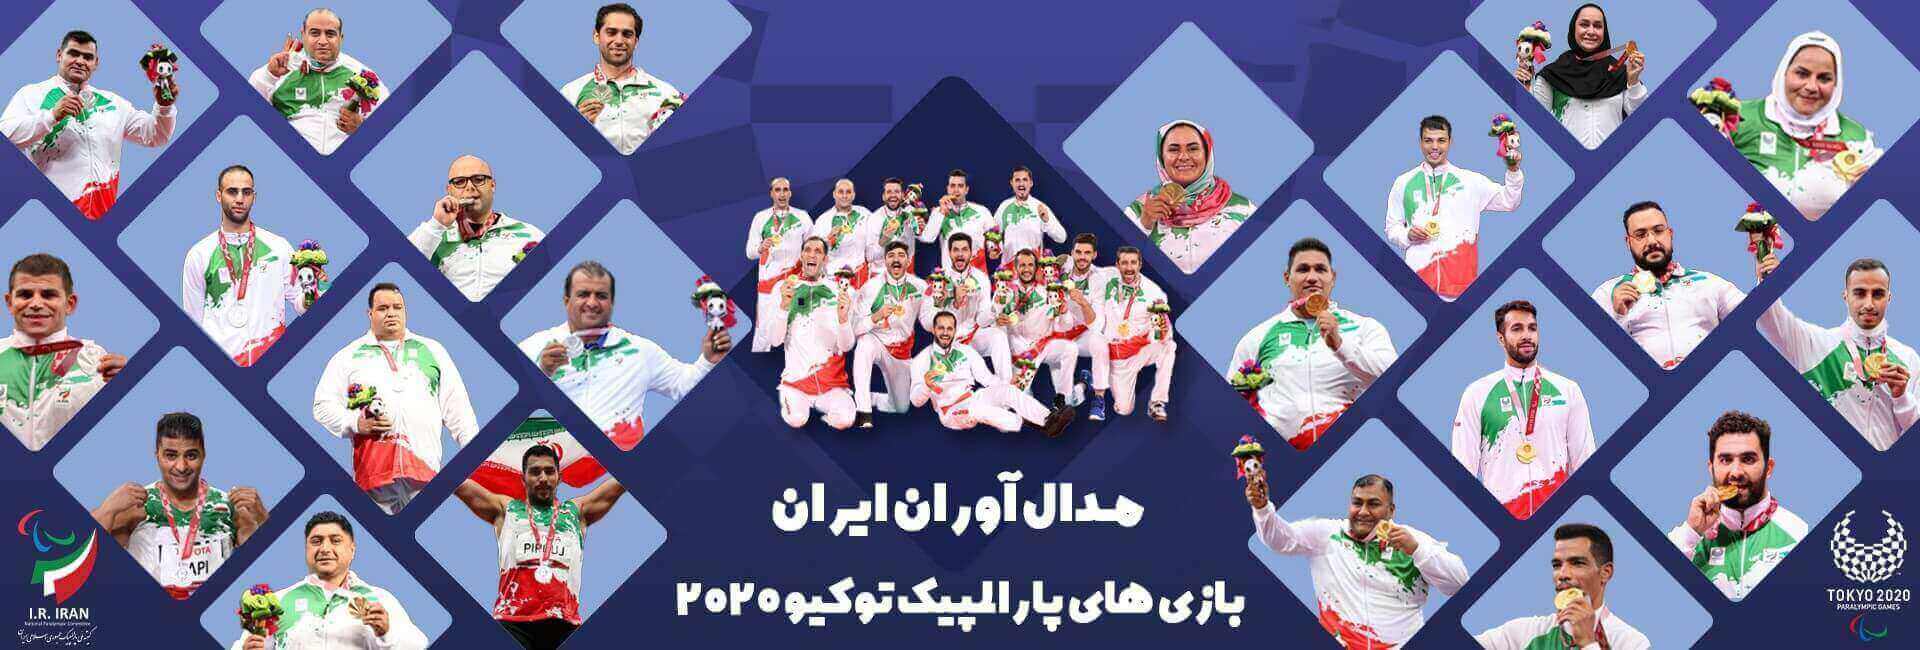 Iran&#39;s Medalists at Tokyo 2020 Paralympics